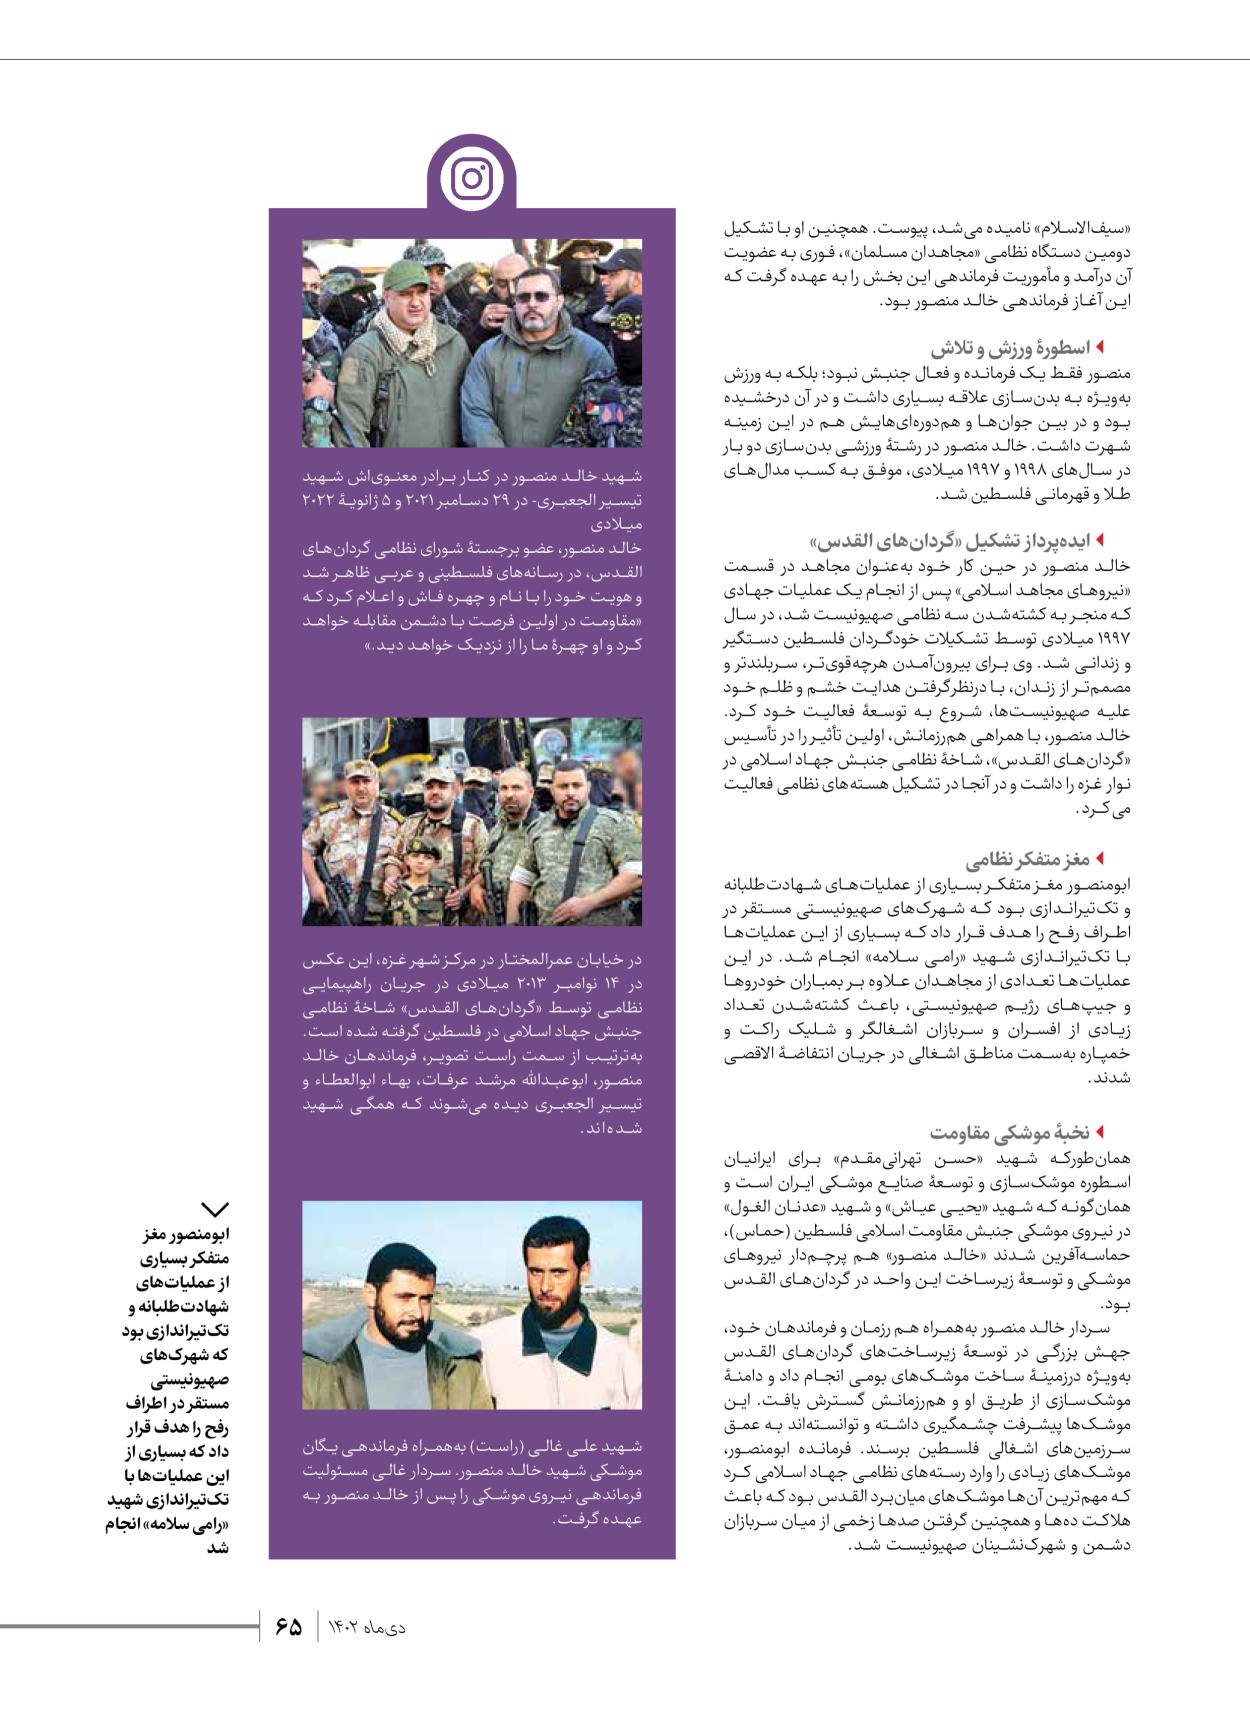 روزنامه ایران - ویژه نامه شهدای قدس ۲ - ۲۳ دی ۱۴۰۲ - صفحه ۶۵